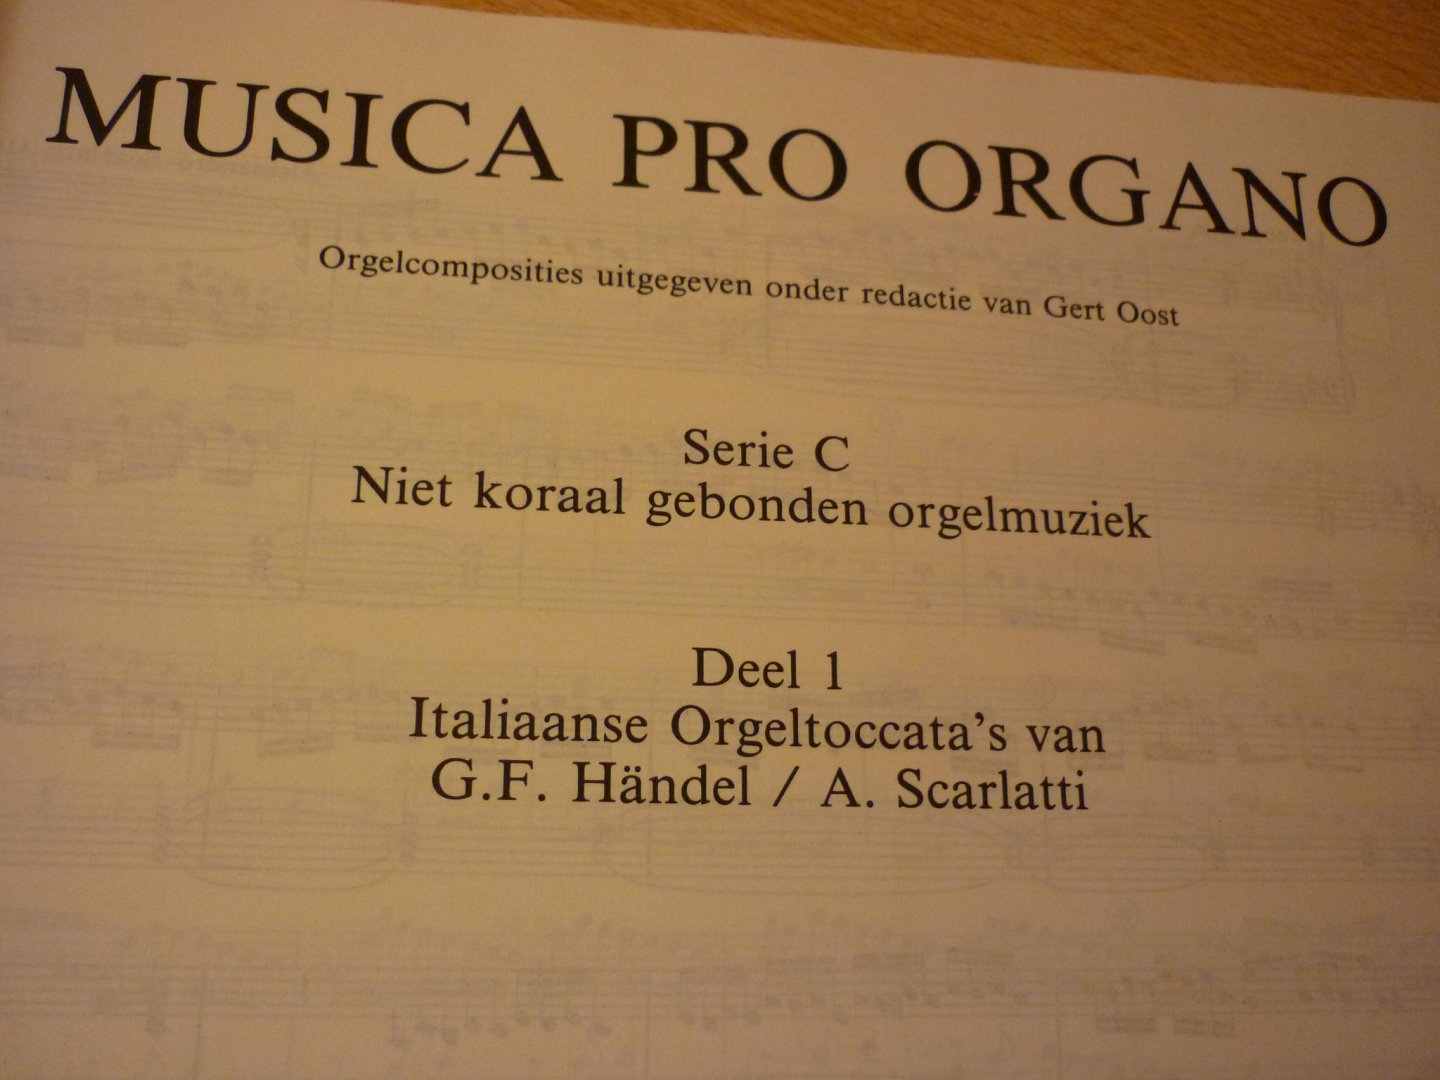 Oost; Gert; onder redactie van - Musica Pro Organo; Serie C; Deel 1 - Italiaanse Orgeltoccata's van Handel en Scarlatti